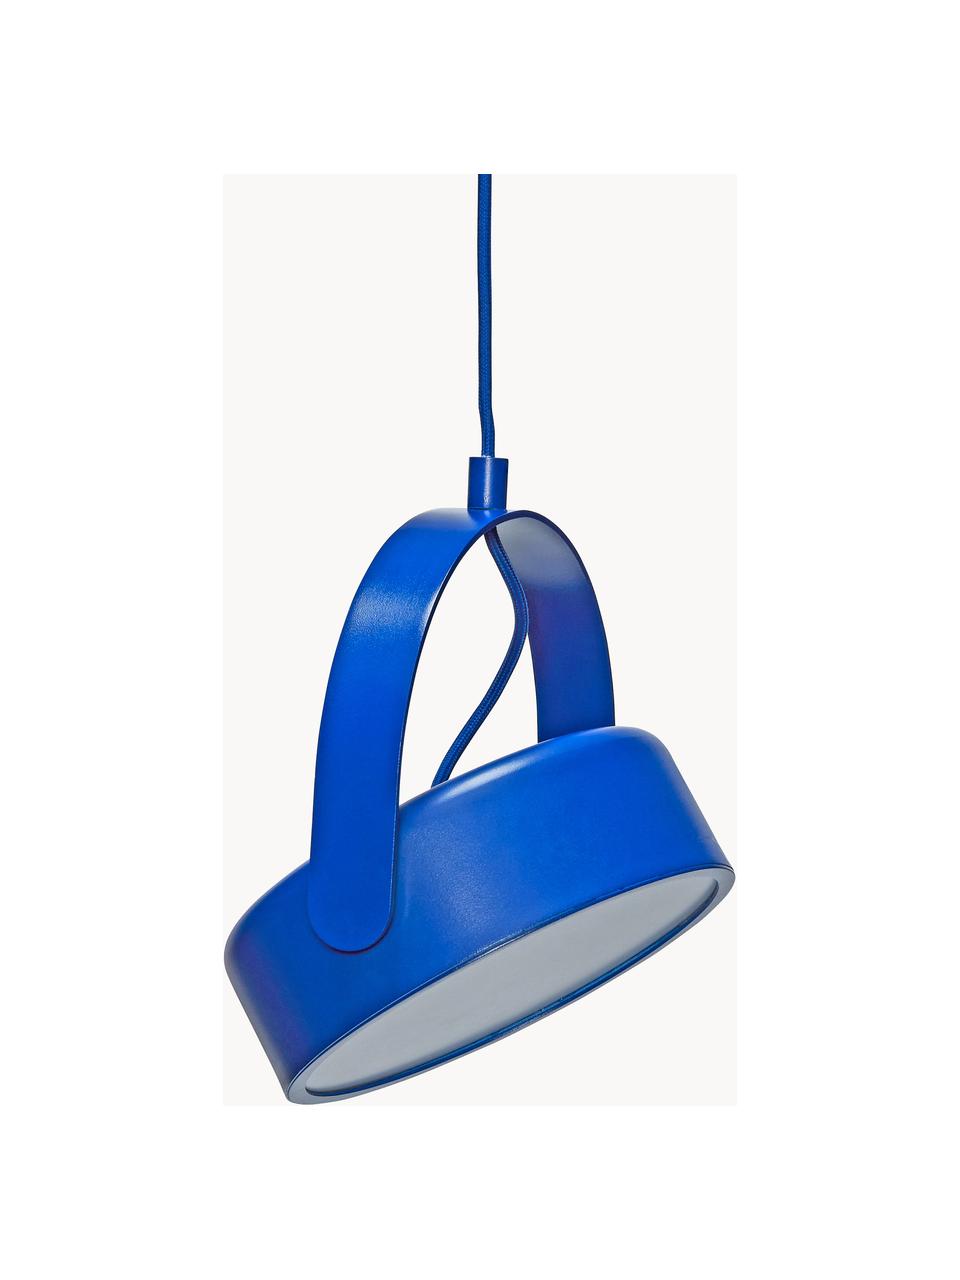 Lampada a sospensione piccola a LED con luce regolabile Stage, Lampada: metallo rivestito, Blu, Larg. 22 x Alt. 27 cm